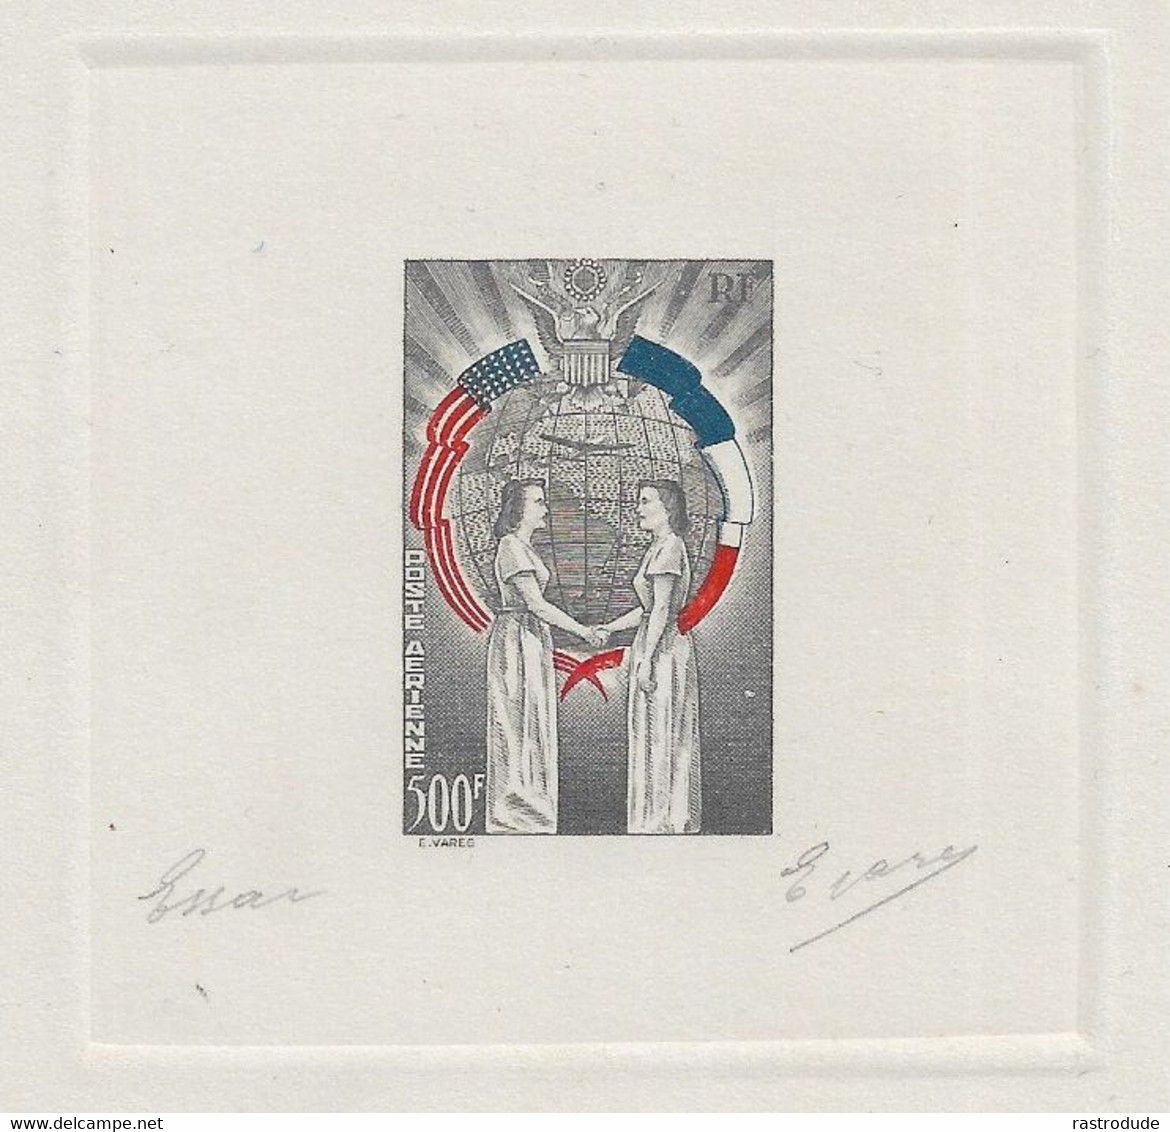 1949 FRANCE - TROIS COULEURS EPREUVE D'ARTISTE - NON EMIS -  L'AMITIÉ FRANCO-AMÉRICAINE SIGNE E.VARES - RARE - Epreuves D'artistes